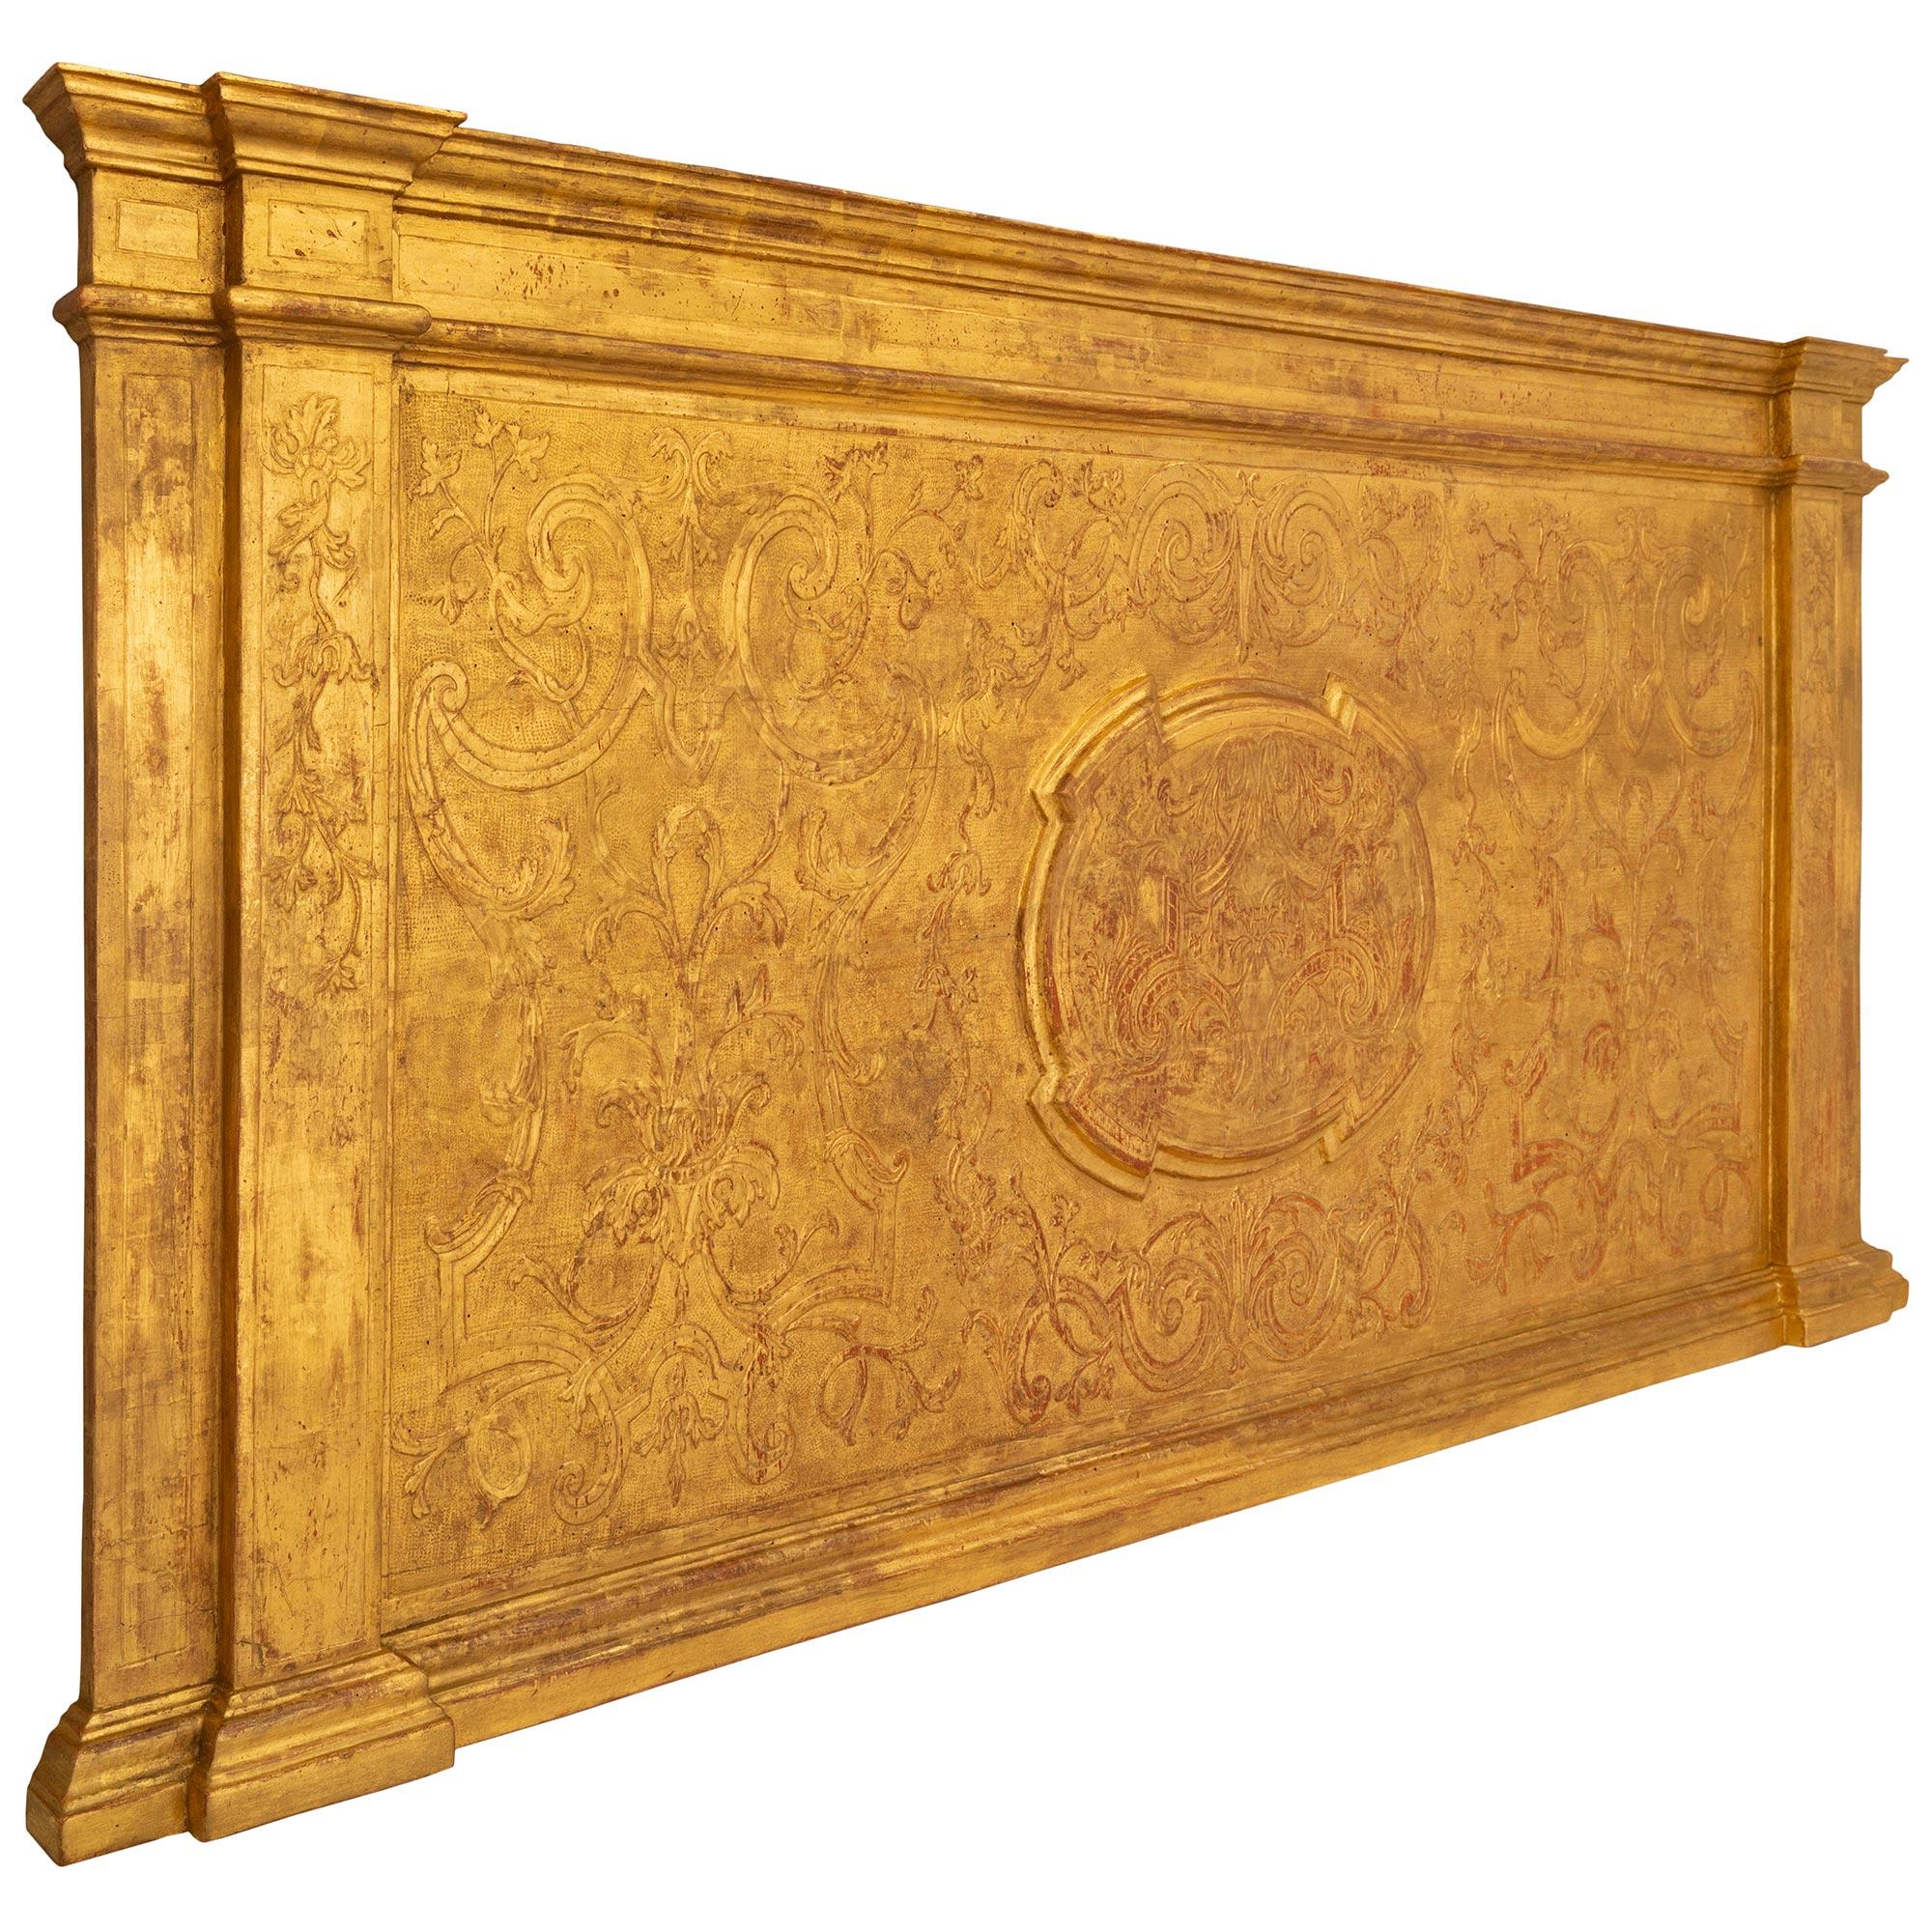 Un superbe panneau de décoration murale en bois doré italien du XVIIIe siècle de style baroque. Au centre de ce panneau très décoratif se trouve un médaillon central en saillie avec des motifs feuillus sculptés et des gerbes de feuilles d'acanthe,